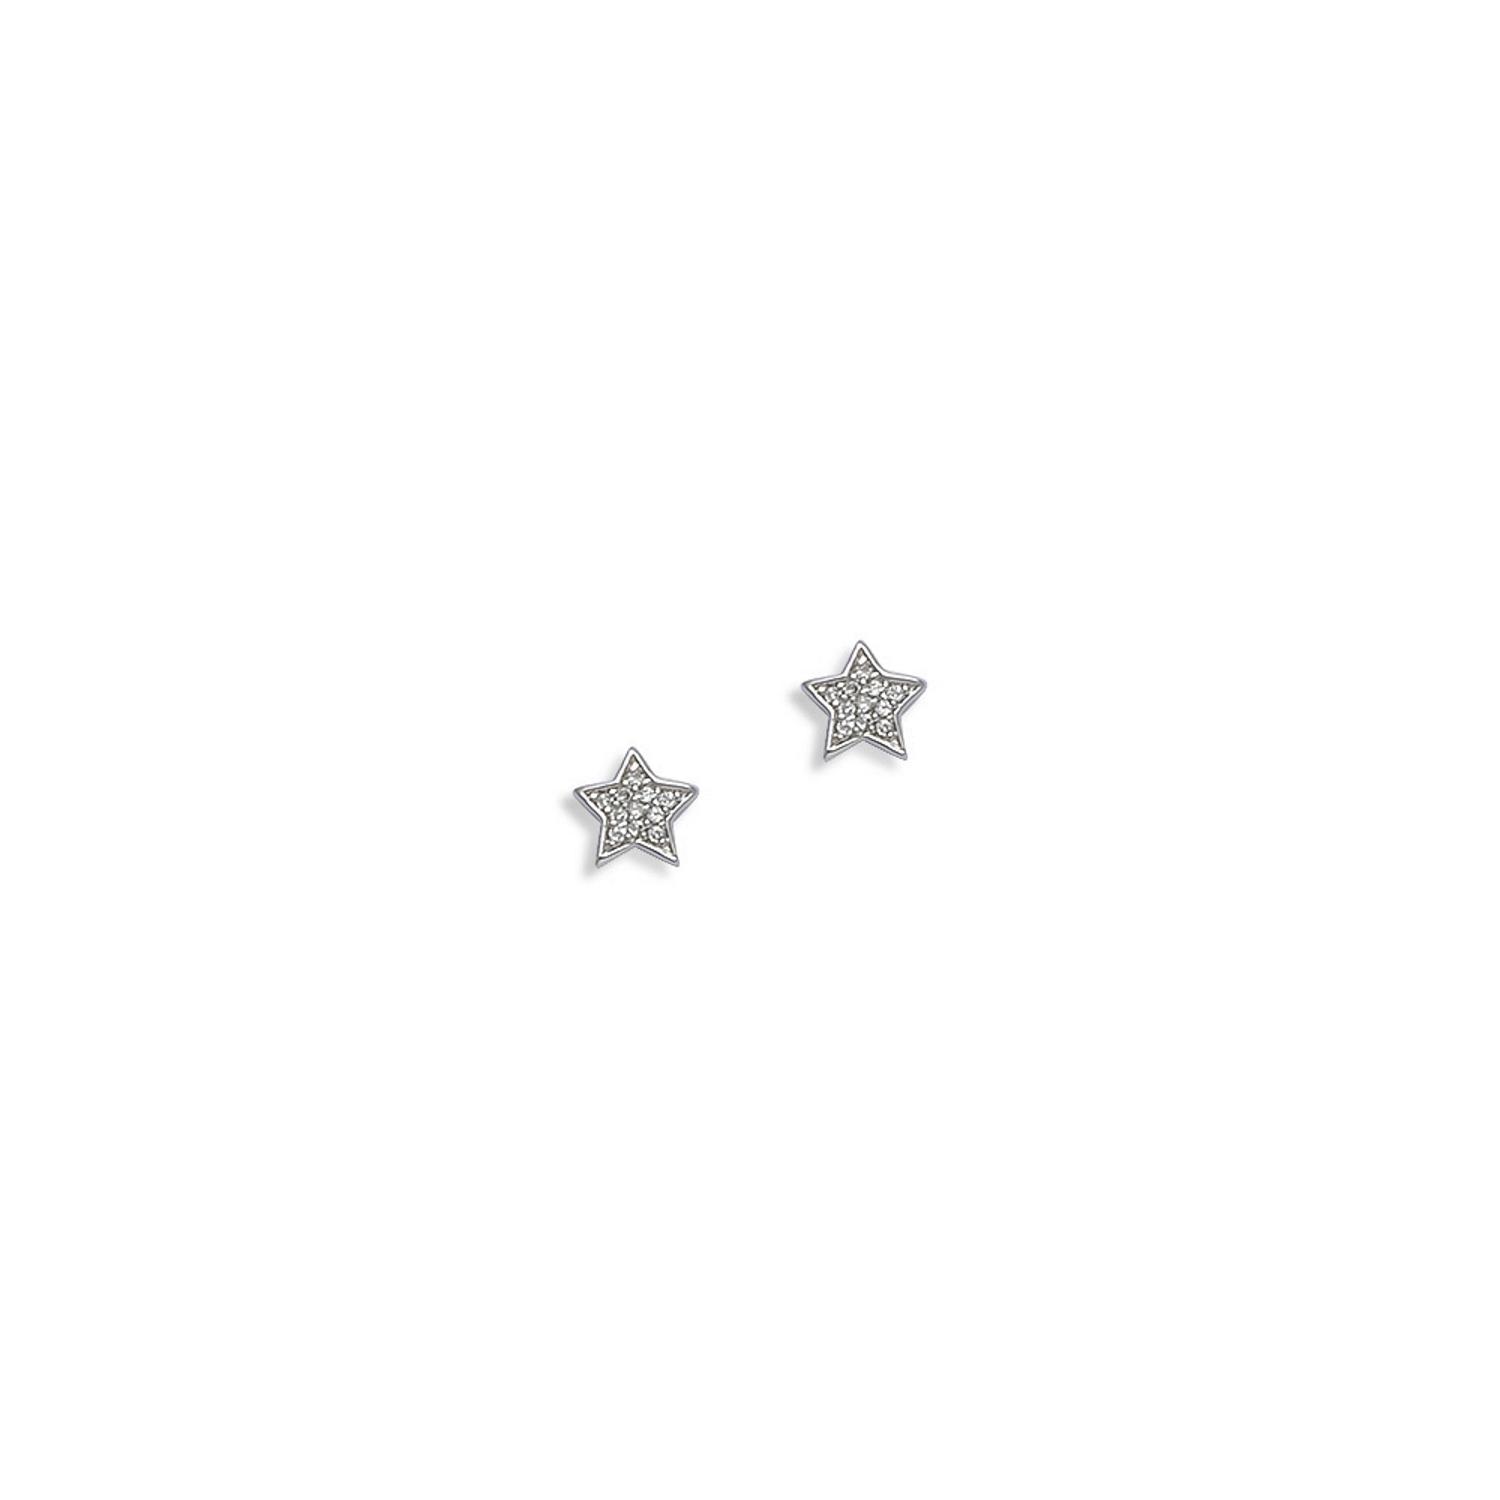 Boucles d'oreilles étoiles en argent 925/000 rhodié serties d'oxydes de zirconium blancs. Etoile  Adulte Enfant Femme Fille Indémodable Nature Symboles 